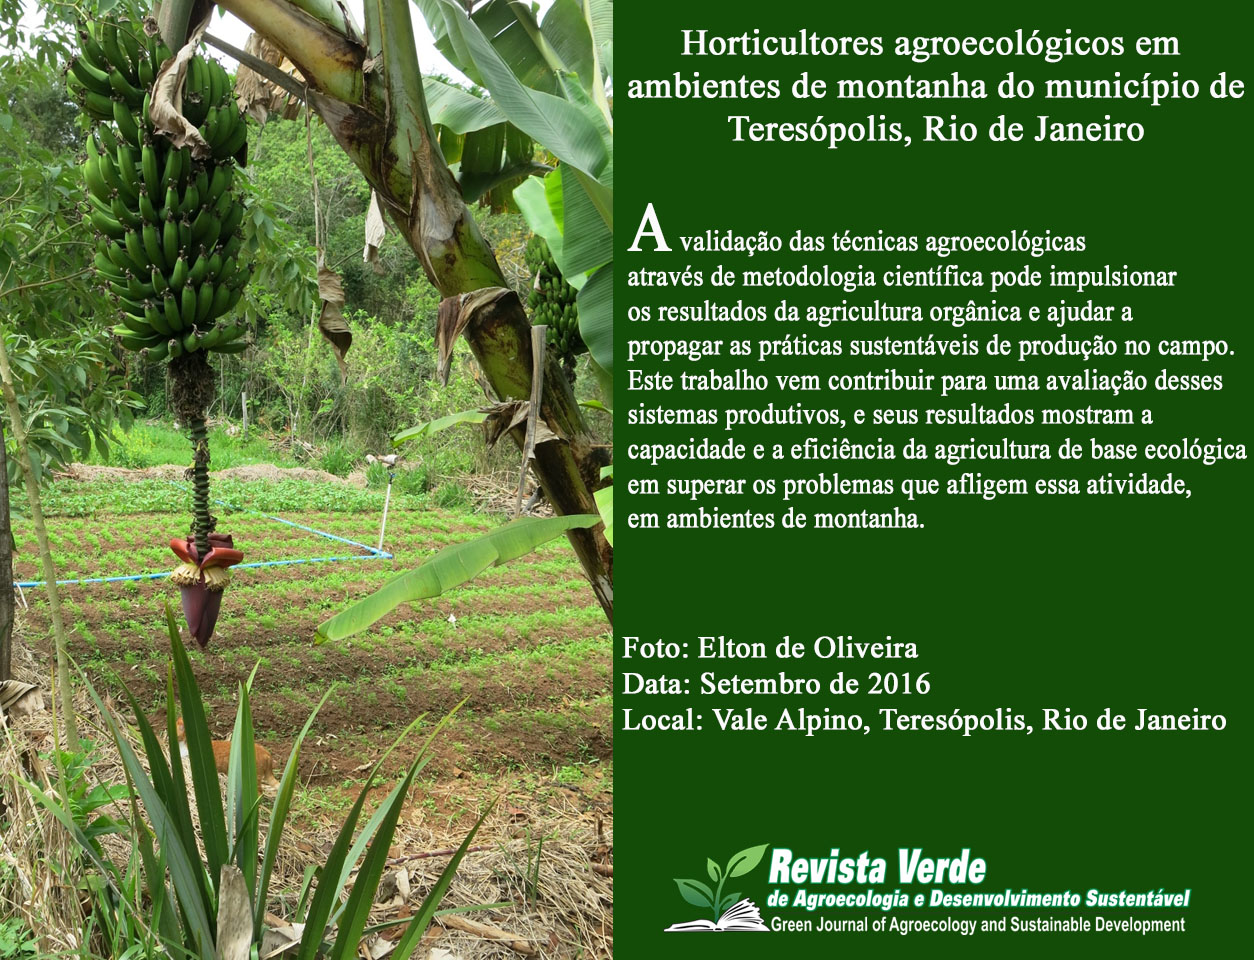 Horticultores agroecológicos em ambientes de montanha do município de Teresópolis, Rio de Janeiro